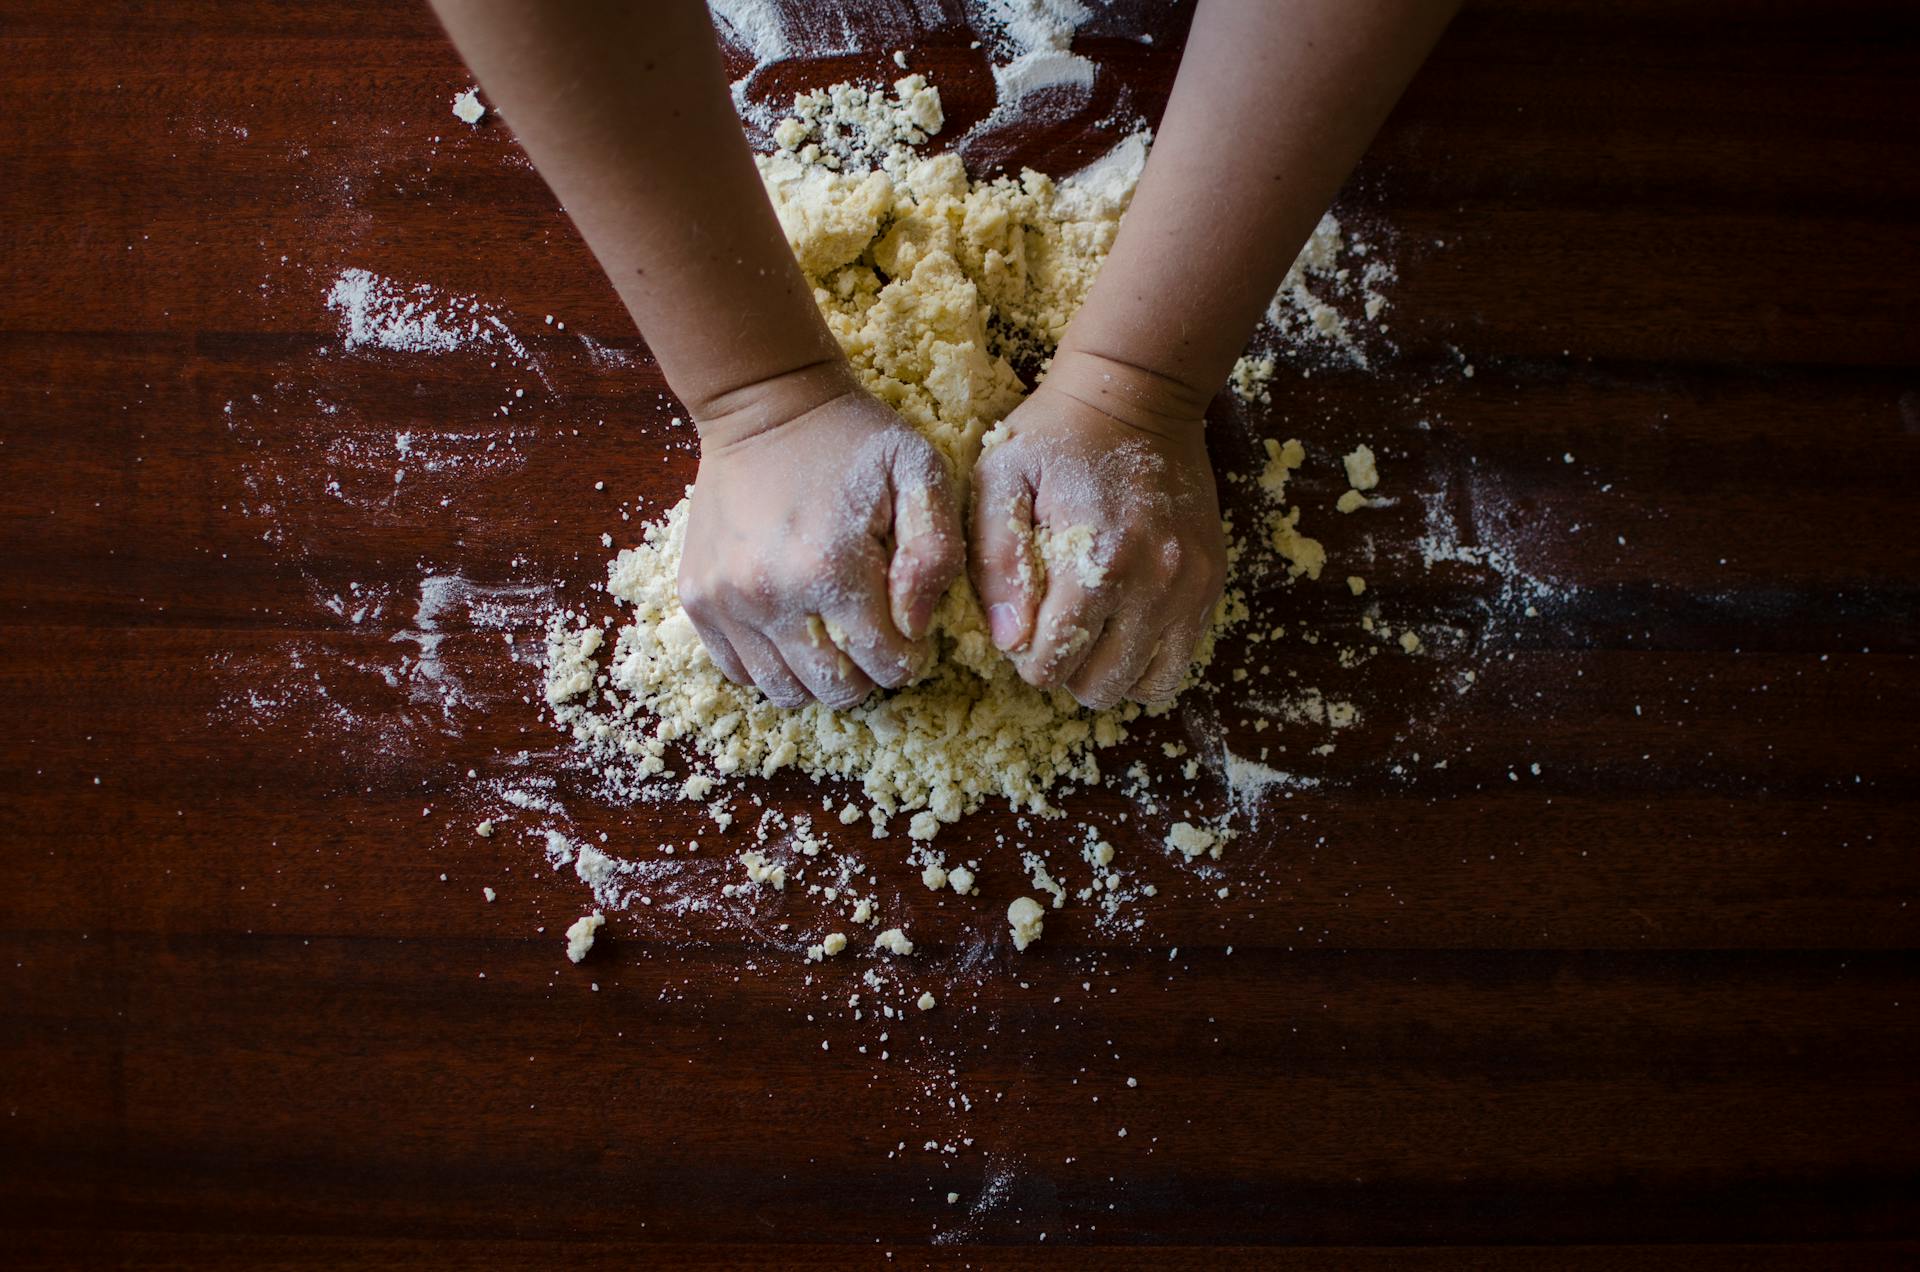 Une personne pétrissant de la pâte | Source : Pexels